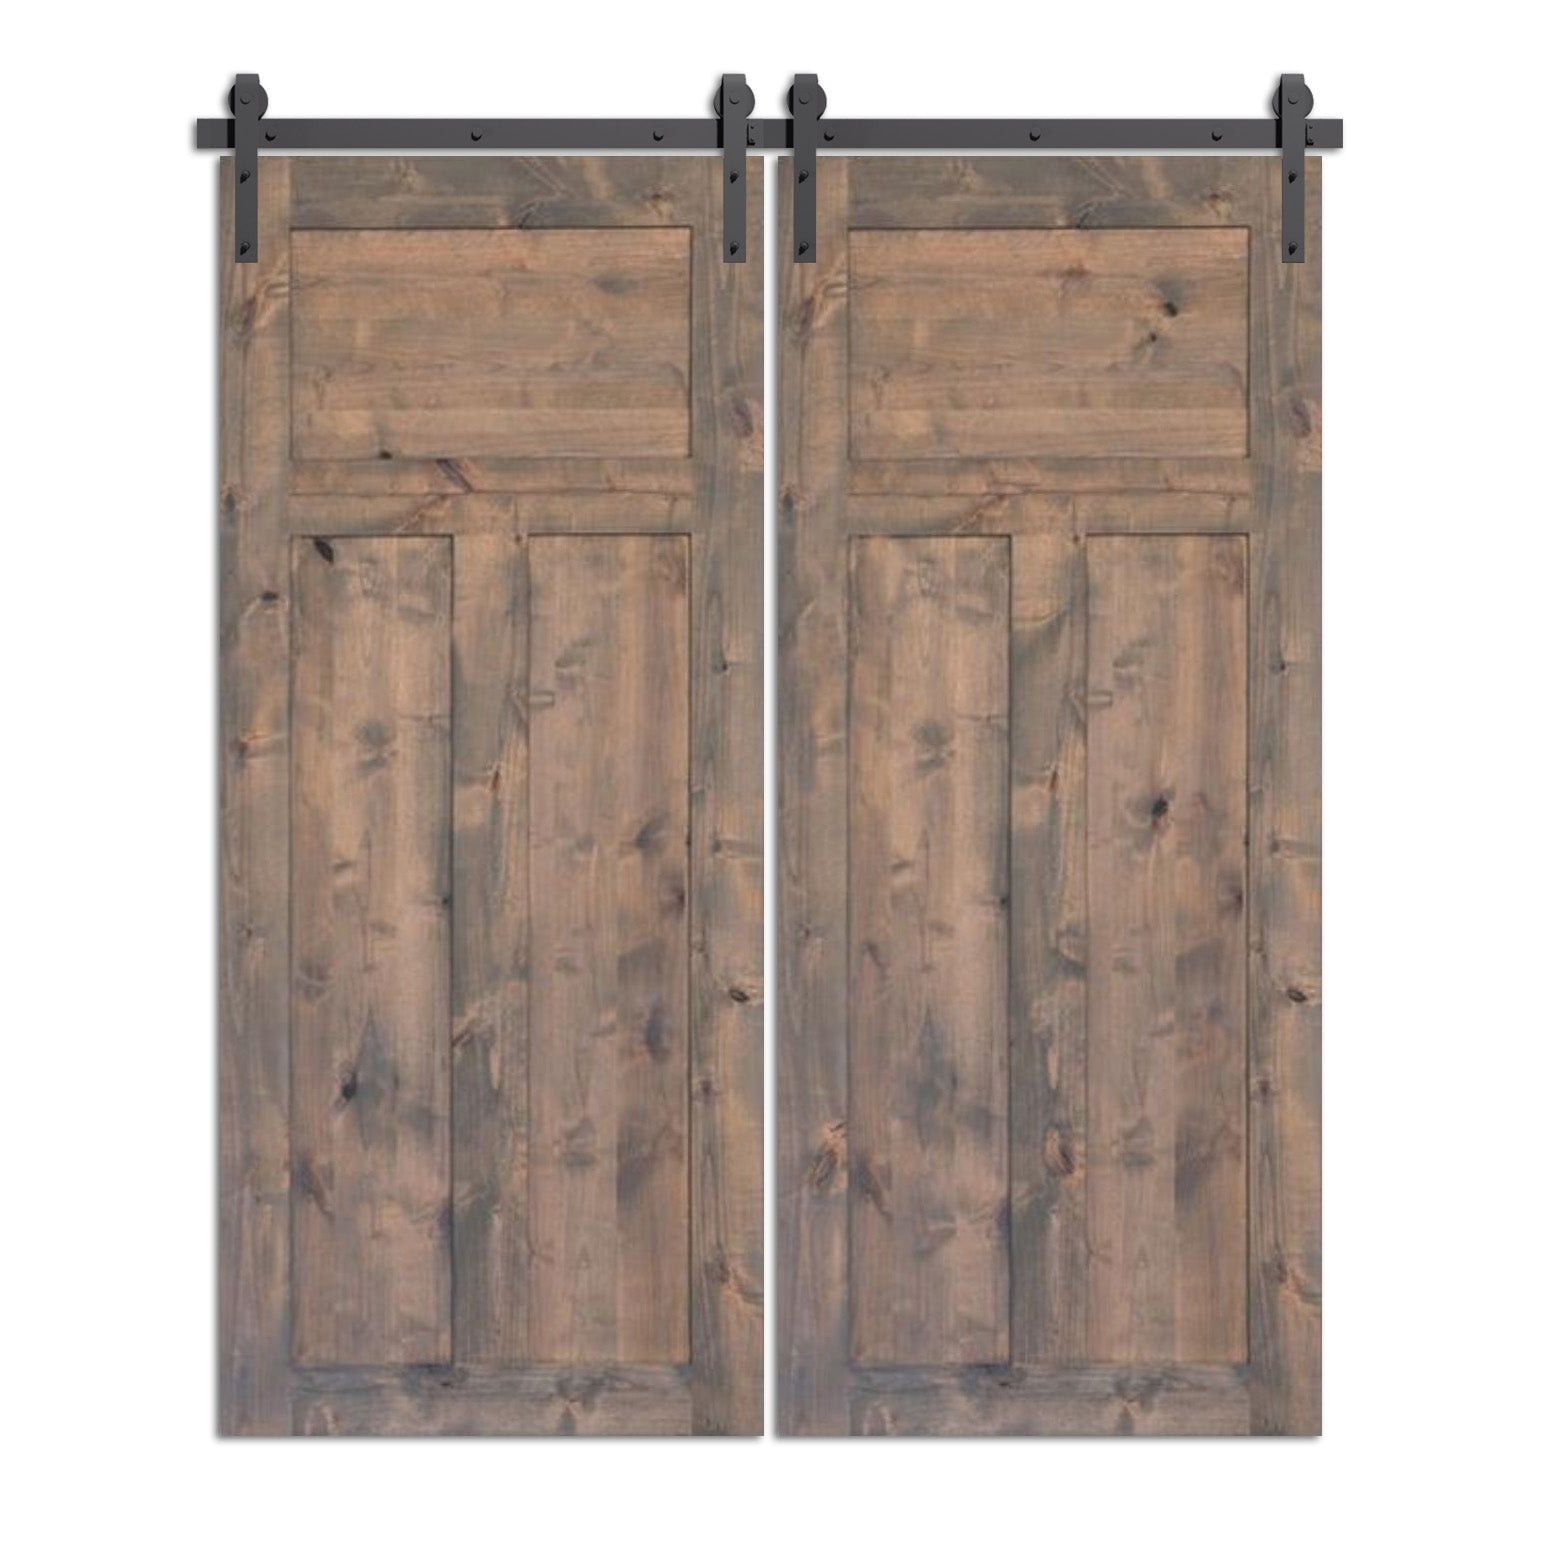 Alkveen - Rustic style Double Sliding Custom Barn Door